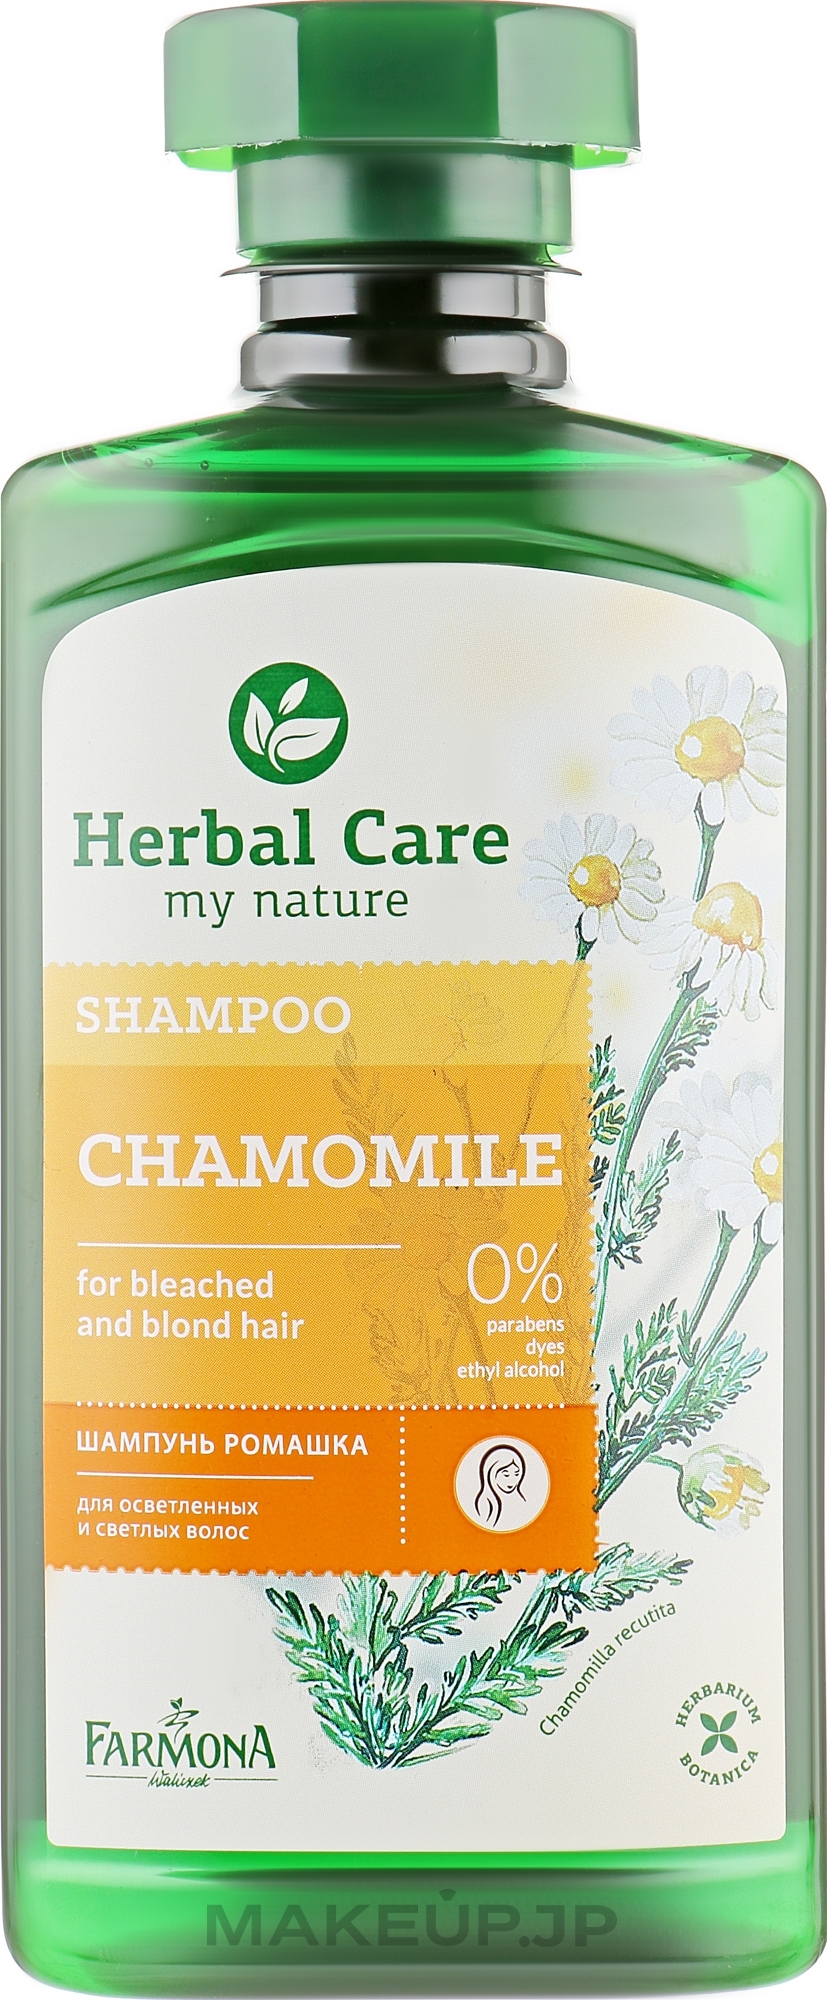 Chamomile Shampoo - Farmona Herbal Care Chamomile Shampoo — photo 330 ml